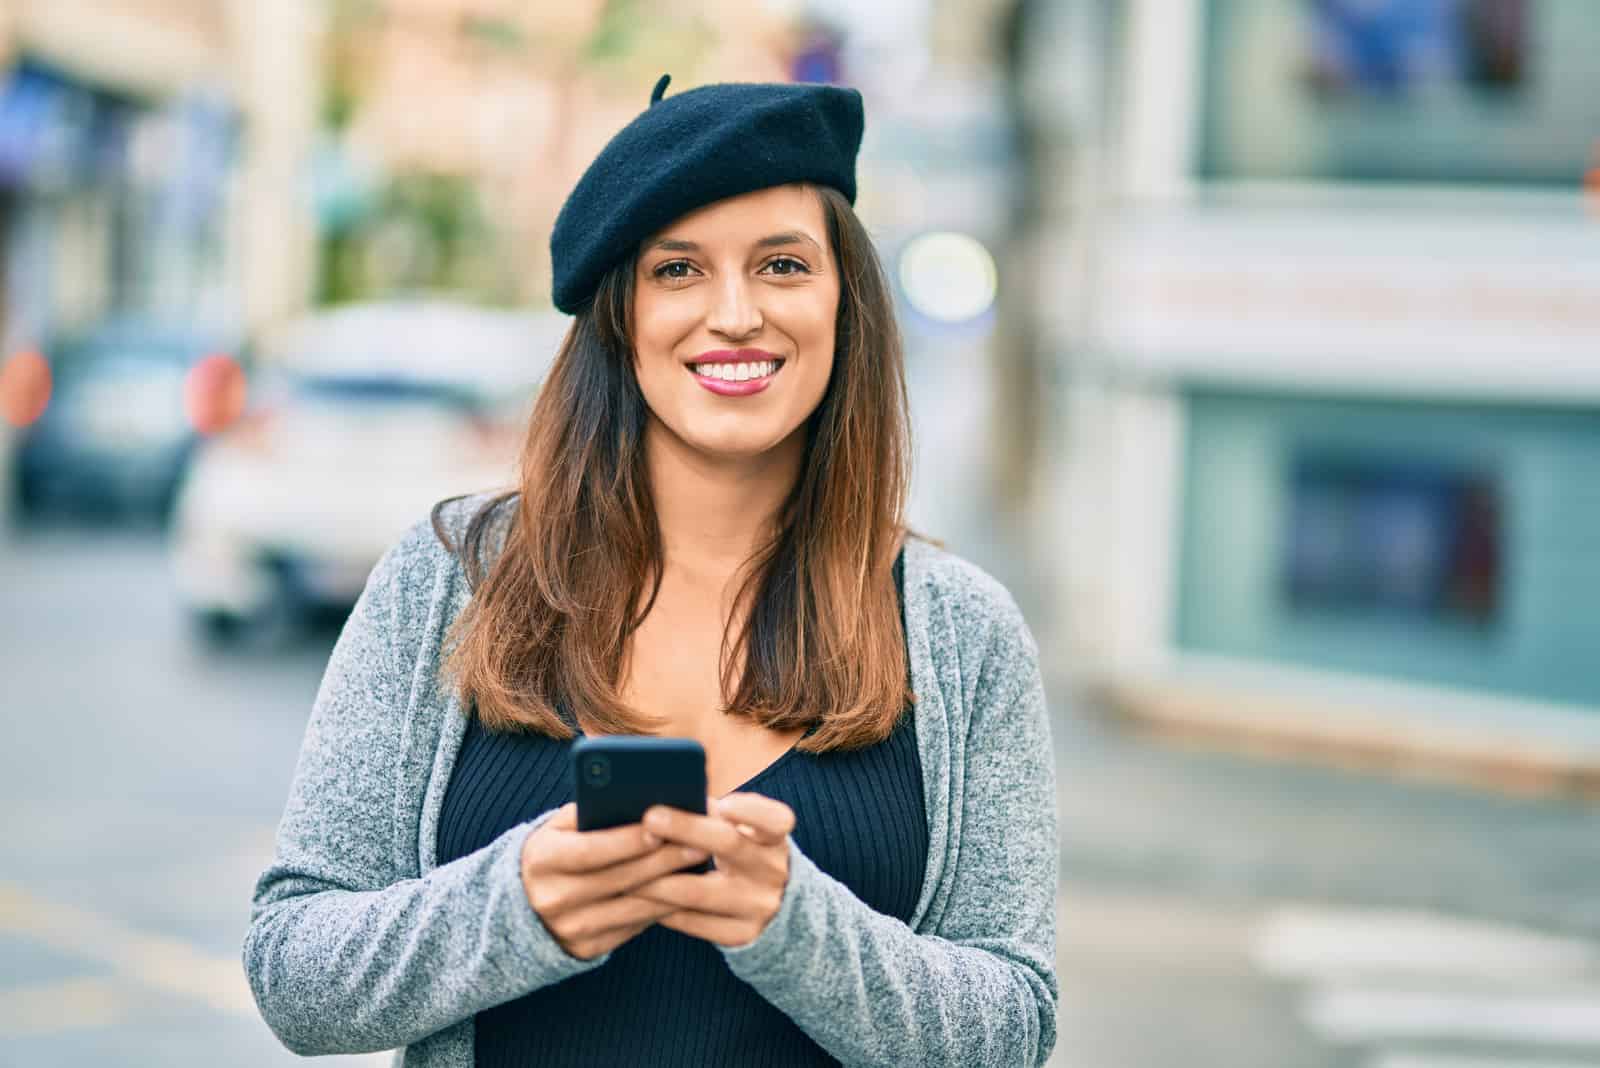 una donna sorridente con lunghi capelli castani si trova in strada con un telefono in mano